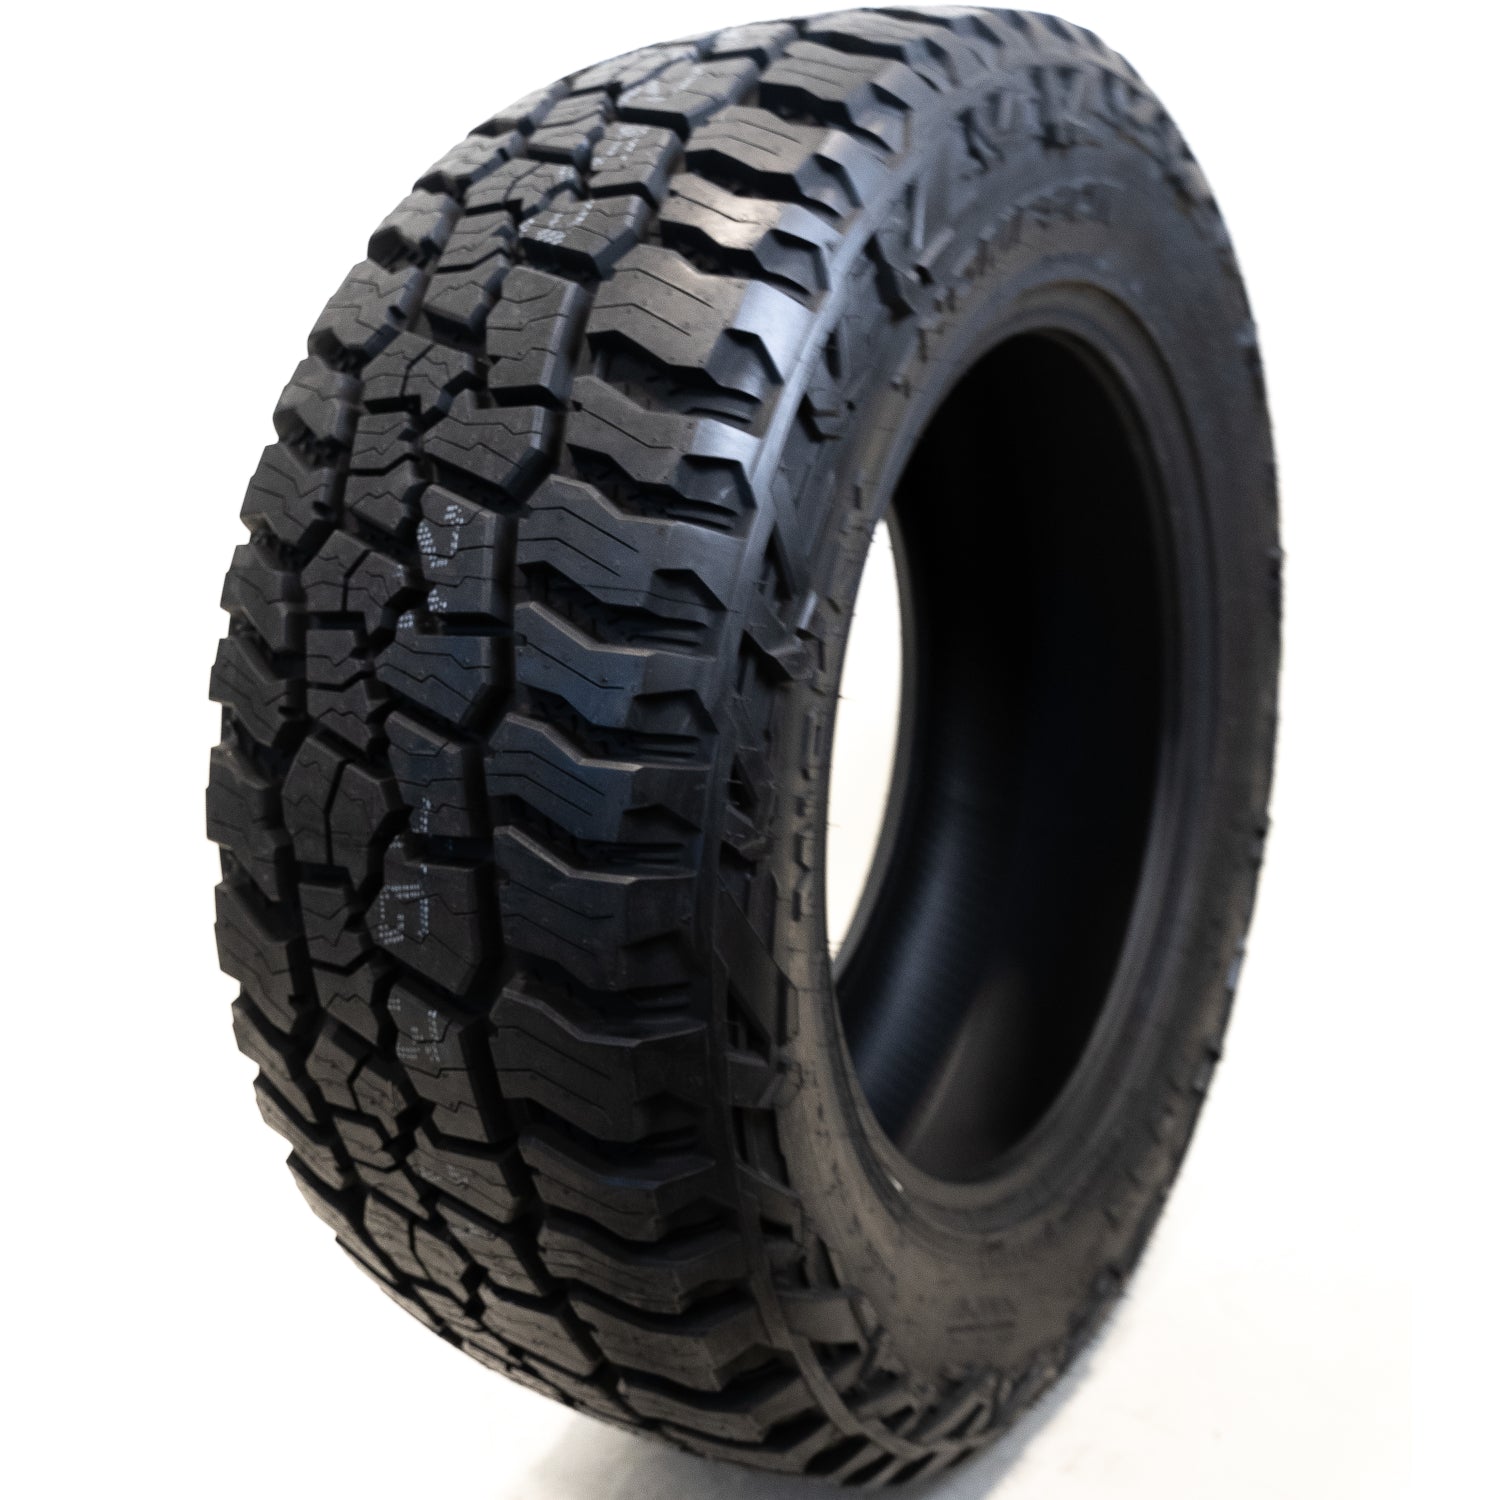 MICKEY THOMPSON BAJA BOSS A/T LT285/55R20 (32.7X11.2R 20) Tires